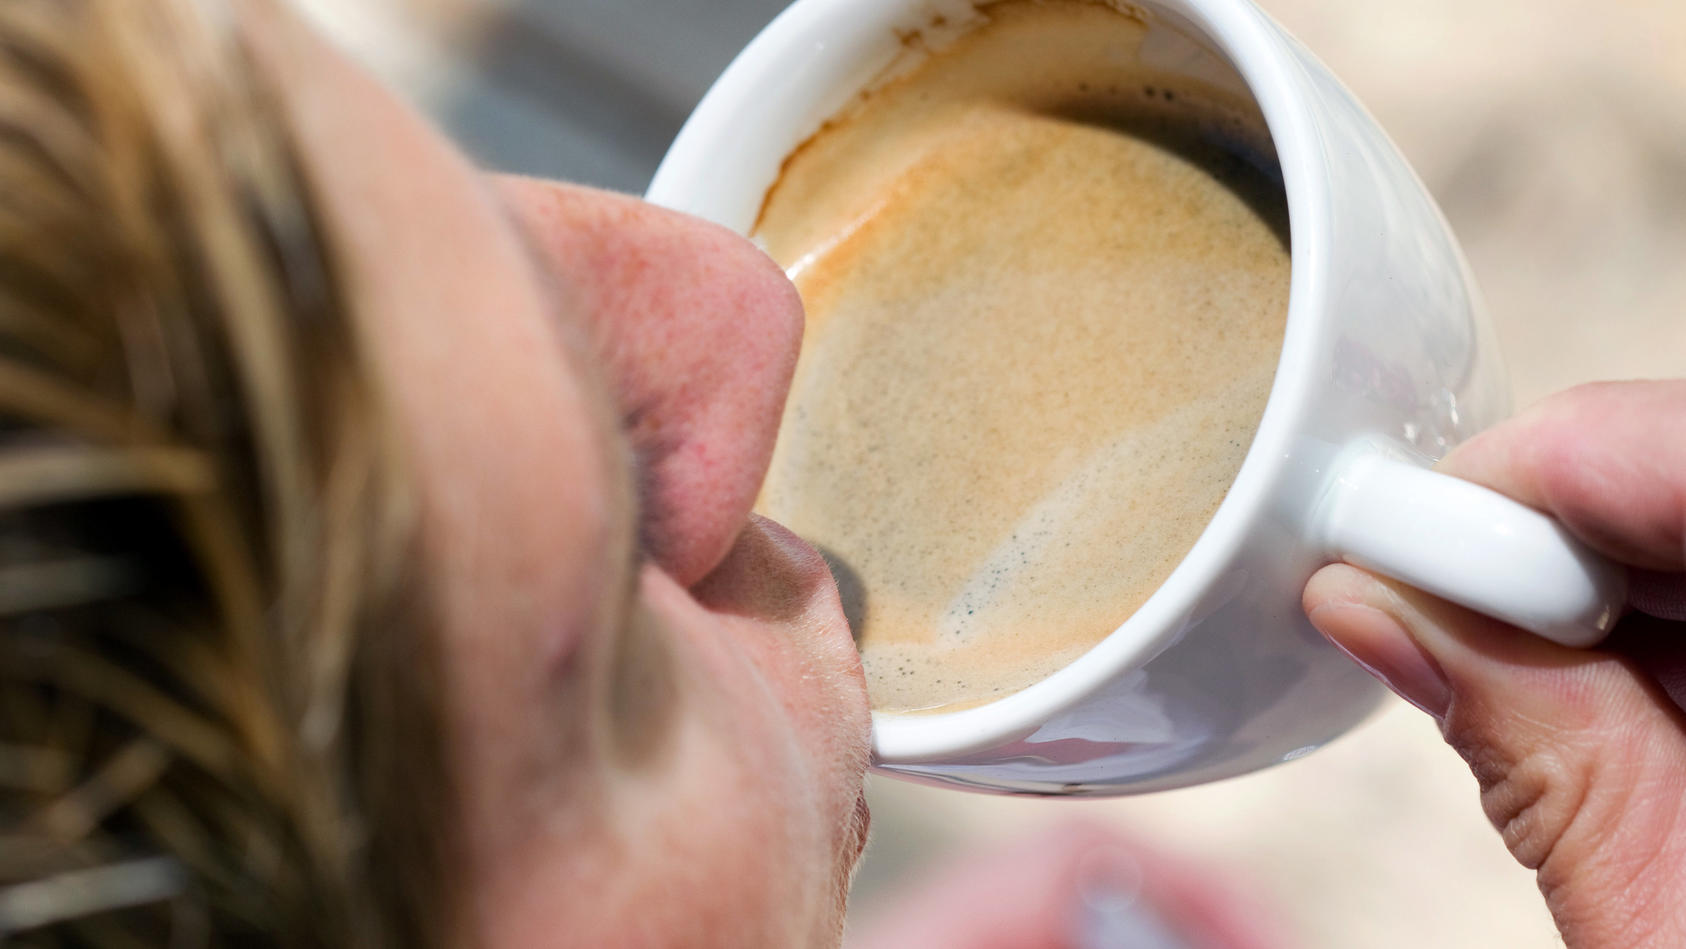 ARCHIV - 03.06.2011; Nordrhein-Westfalen, Münster: Eine Frau trinkt eine Tasse Kaffee-Crema. (zu dpa "US-Lebensmittelbehörde: Keine Krebswarnung für Kaffee" vom 29.08.2018) Foto: Friso Gentsch/dpa +++ dpa-Bildfunk +++